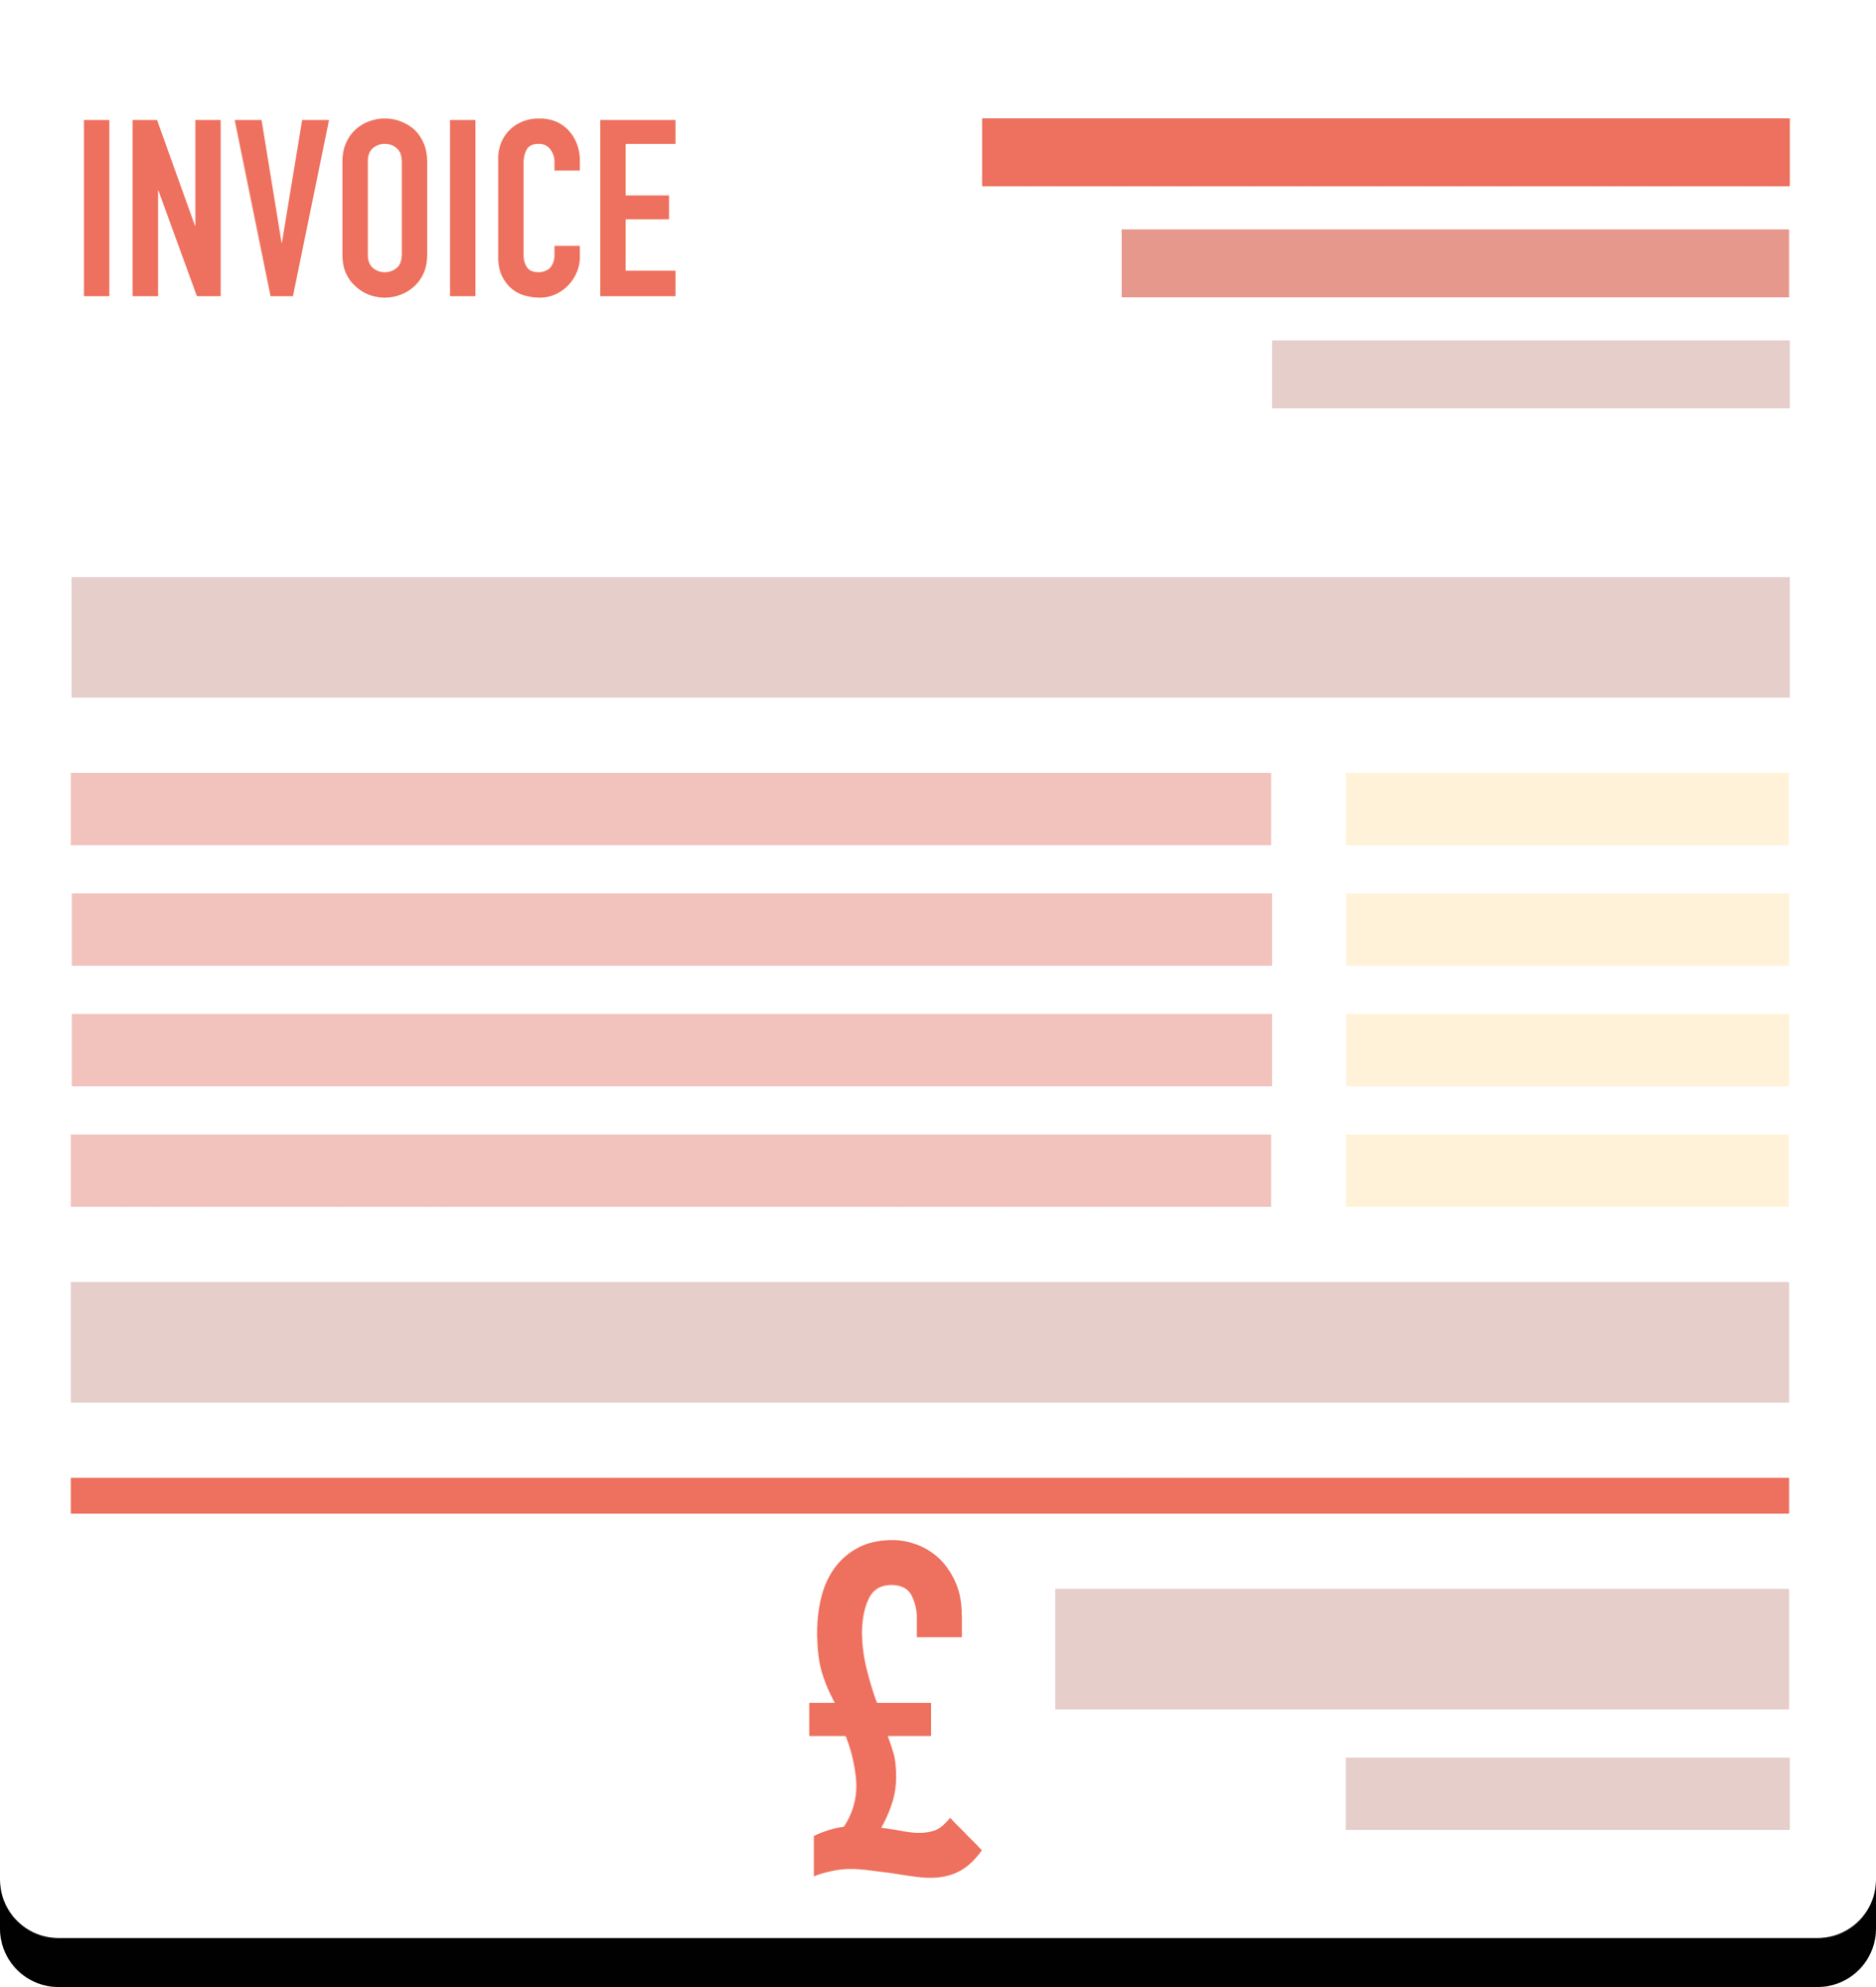 Invoicing App